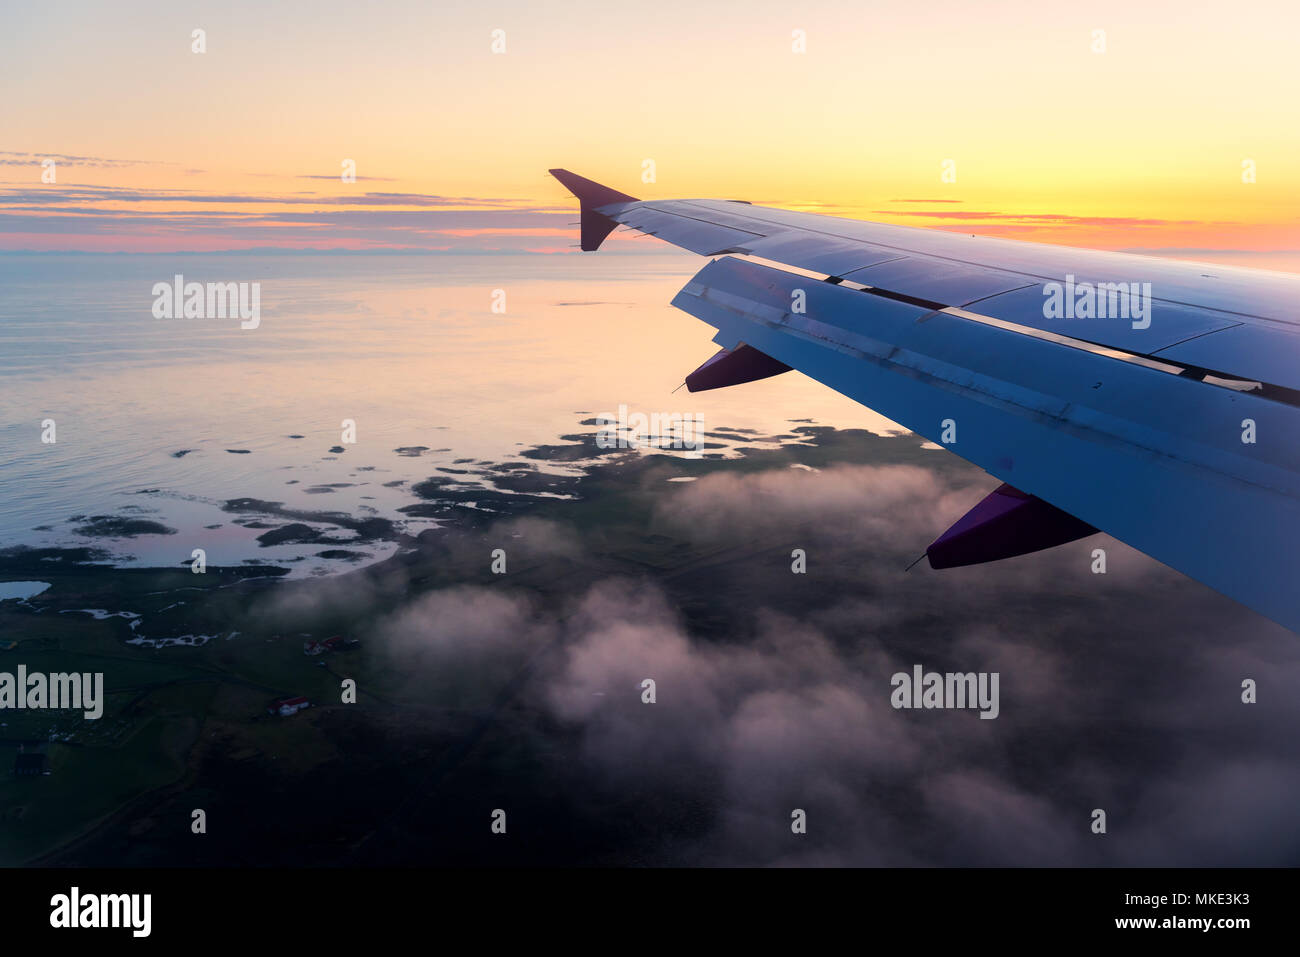 View through airplane window Stock Photo